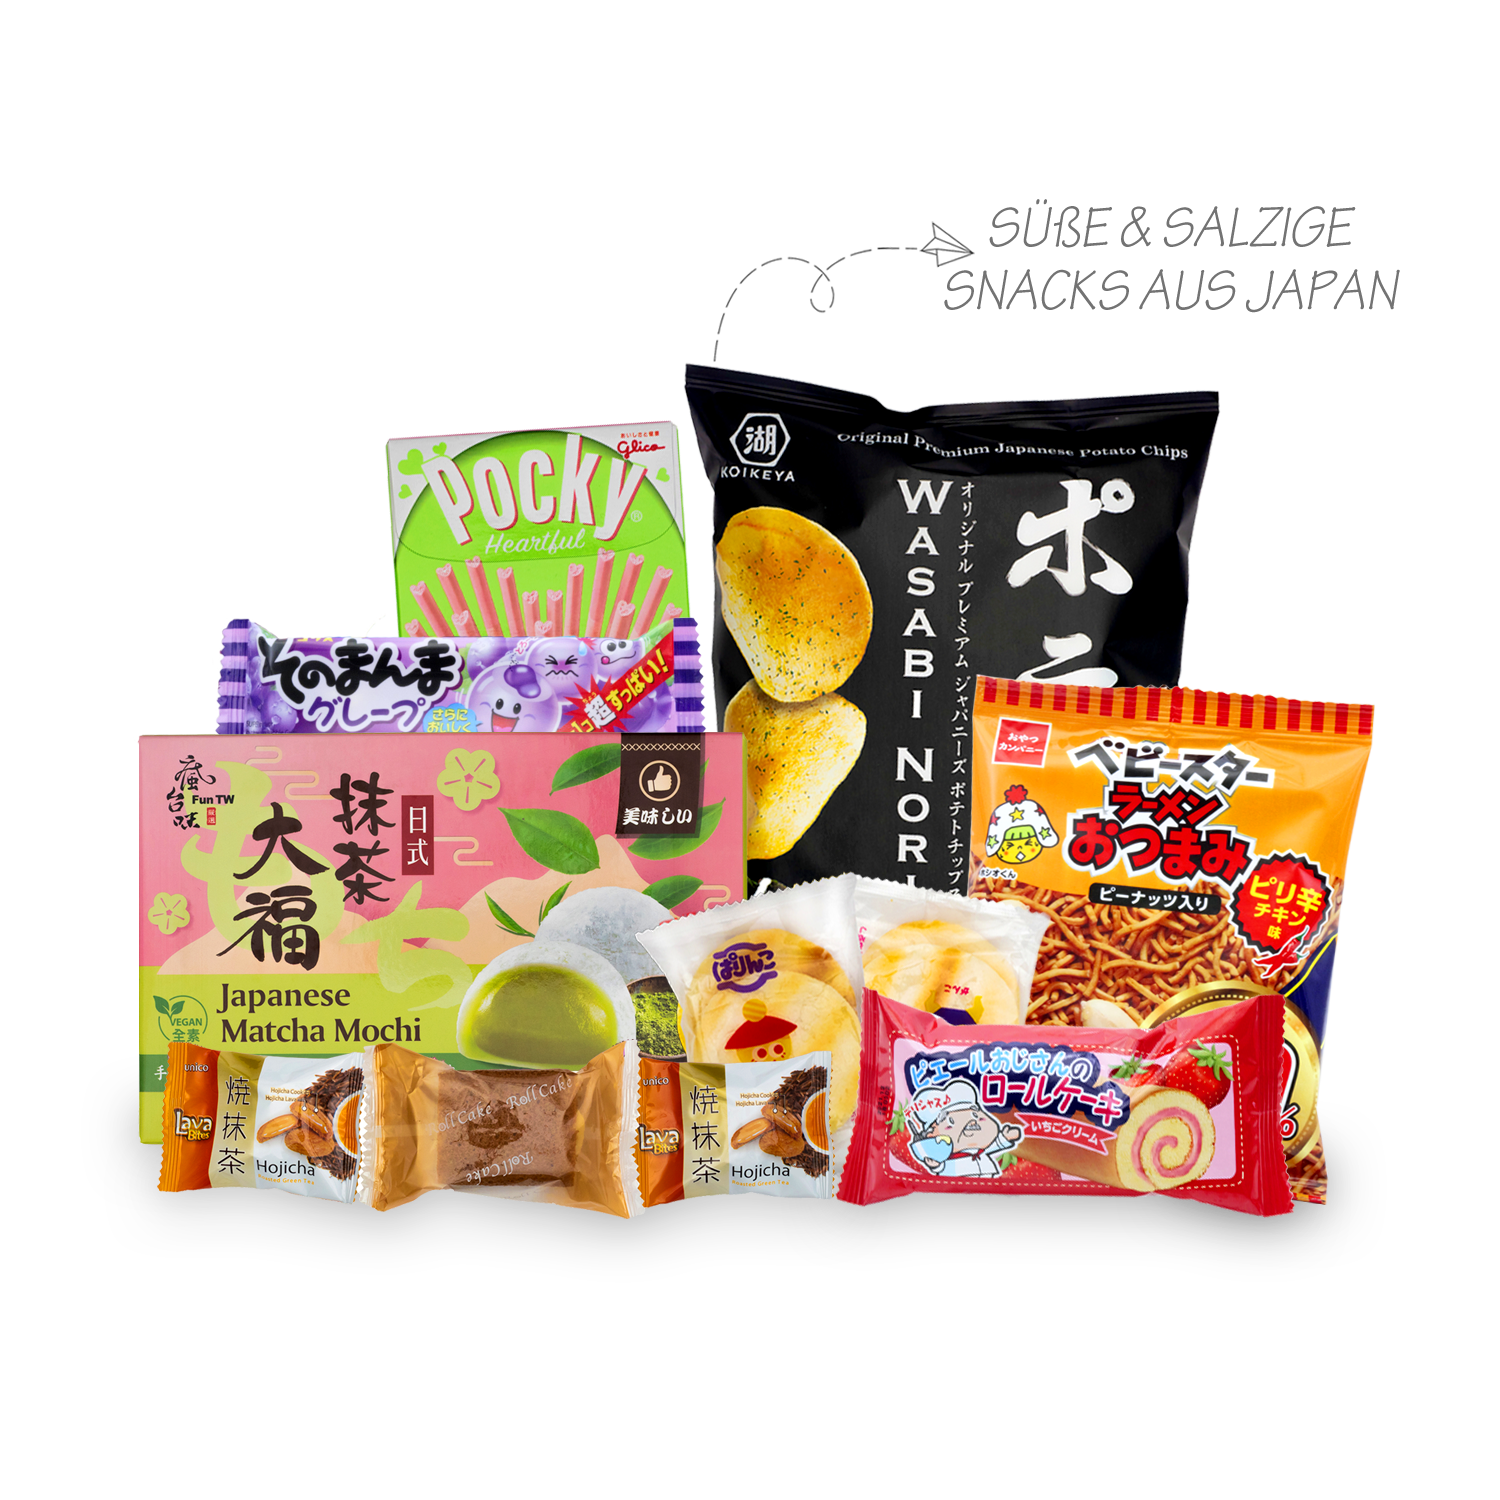 Candy Experience: 3 Süßigkeitenboxen aus Korea, Japan und den USA